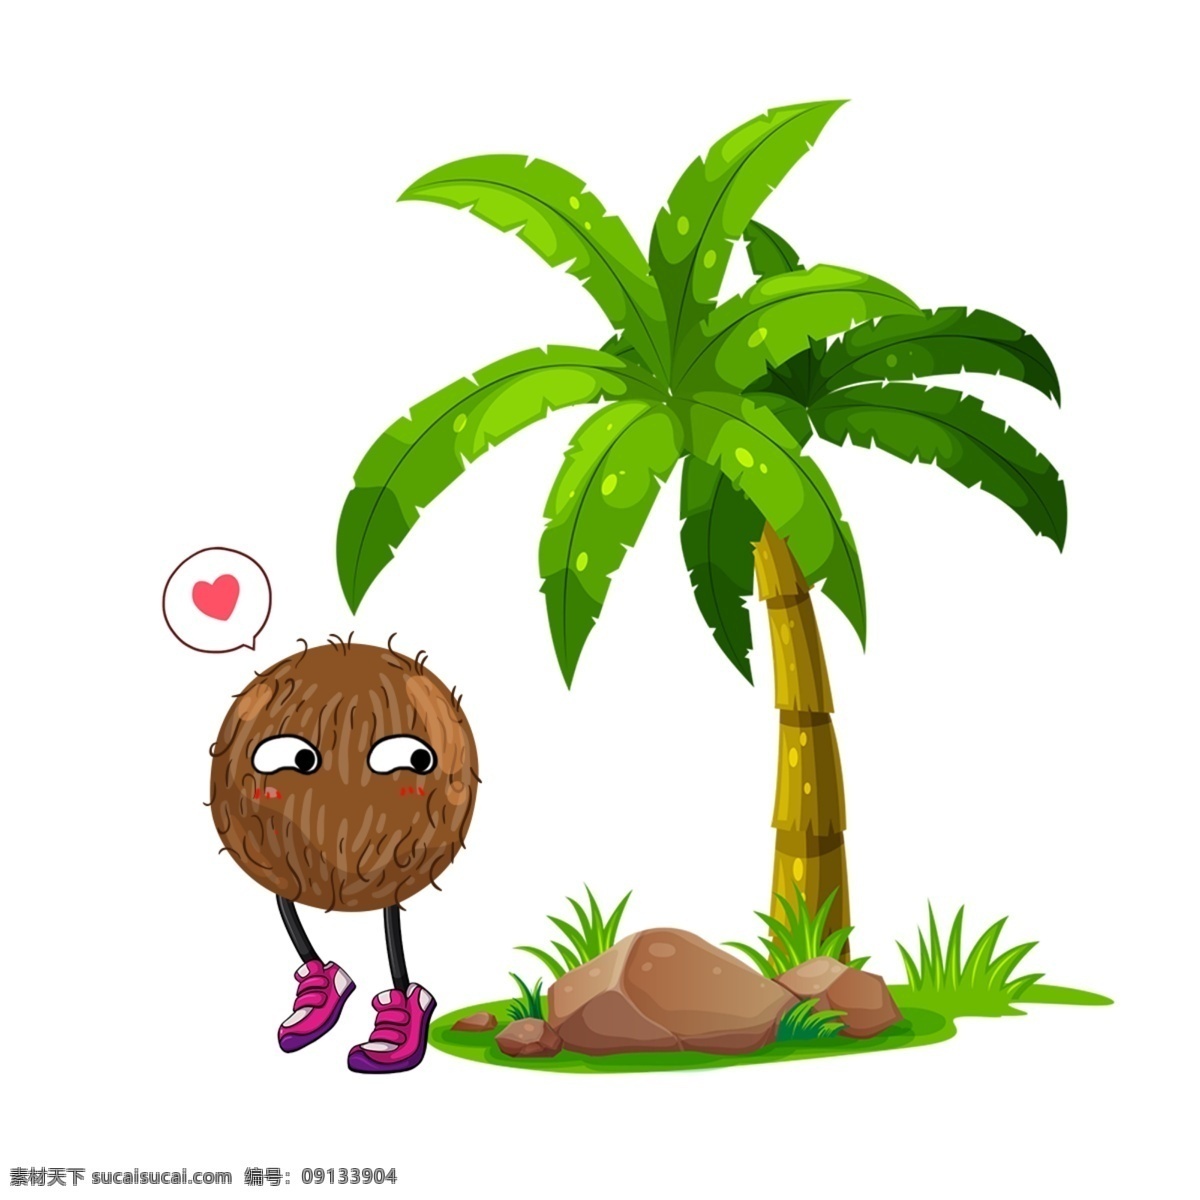 卡通椰子 卡通 椰子树 椰子 矢量椰子 手绘椰子 椰子汁 卡通水果 矢量水果素材 水彩水果 手绘水果 动漫卡通 插画 儿童绘本 儿童画画 卡通漫画 食物简笔画 美食 美味 食物漫画